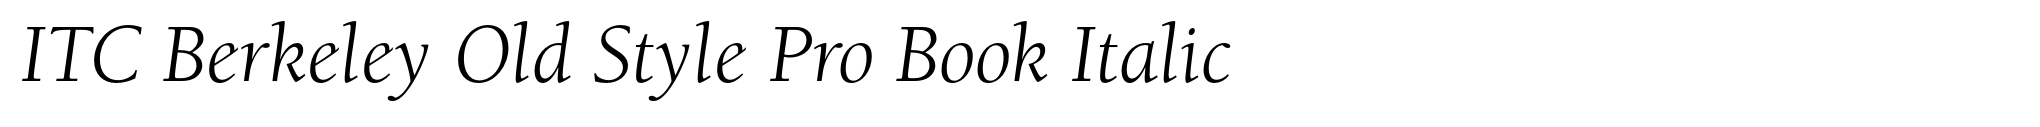 ITC Berkeley Old Style Pro Book Italic image